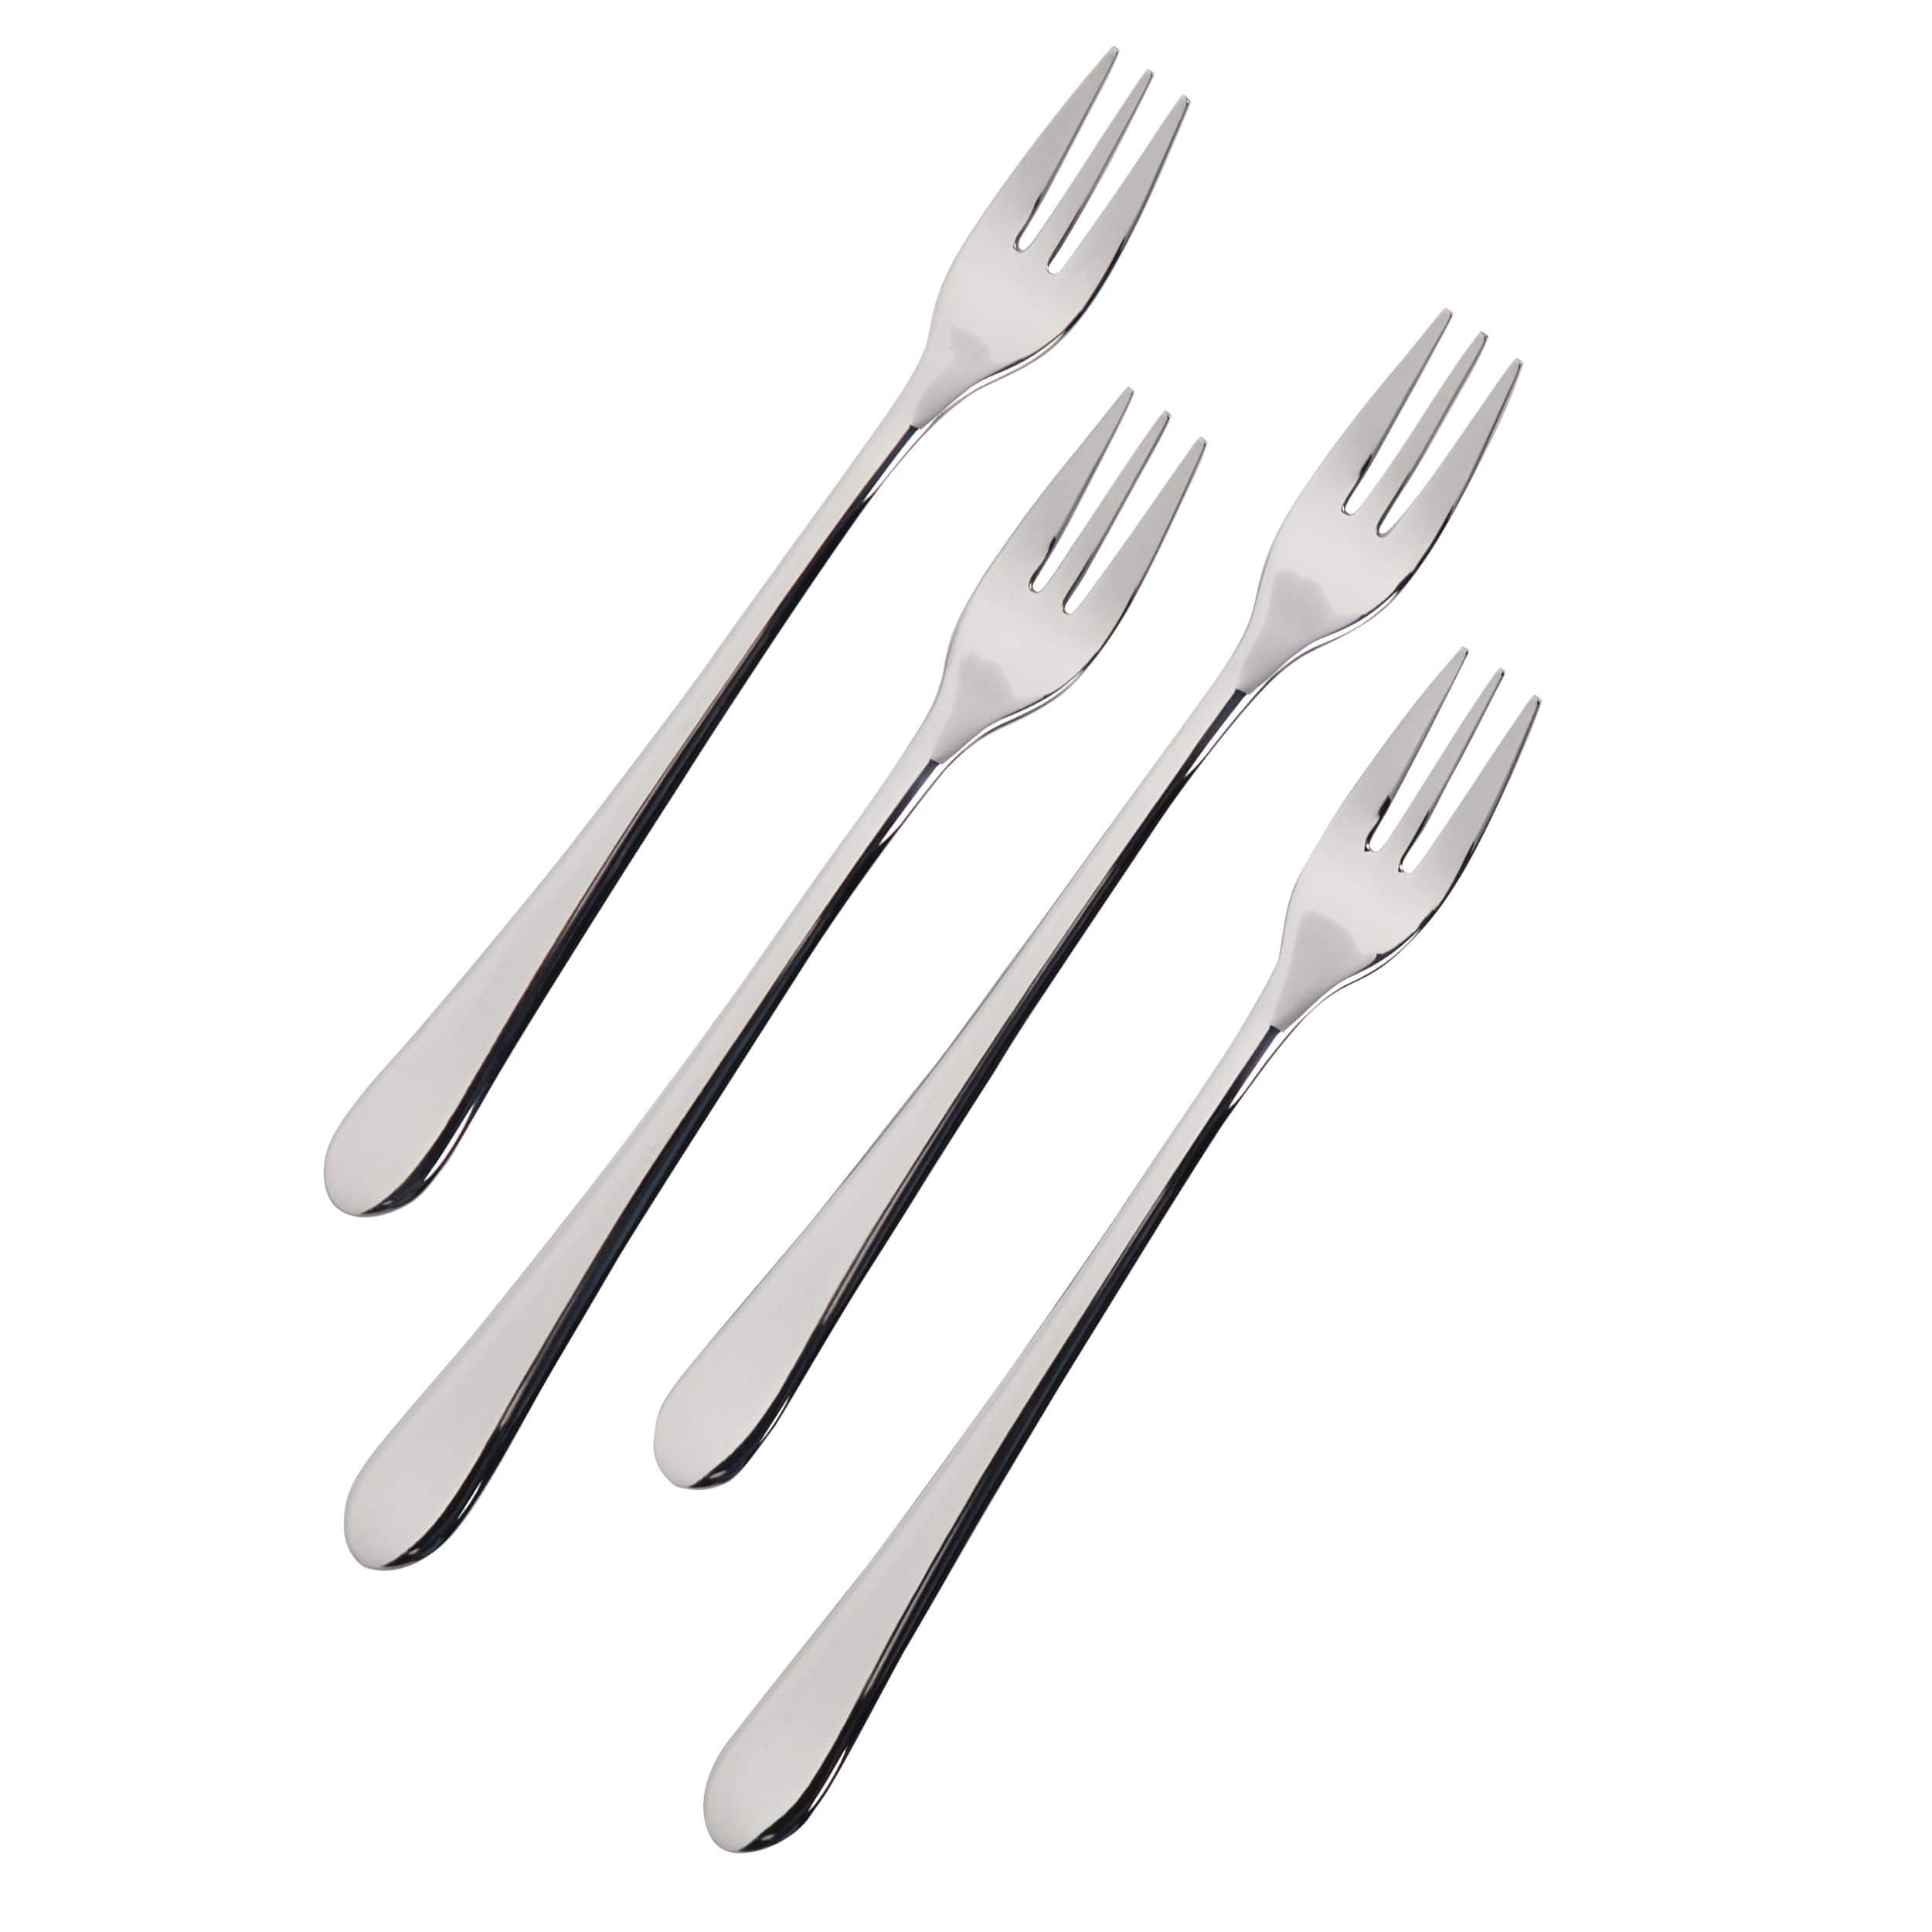 Mini fourchettes PADERNO en acier inoxydable, paq. 4